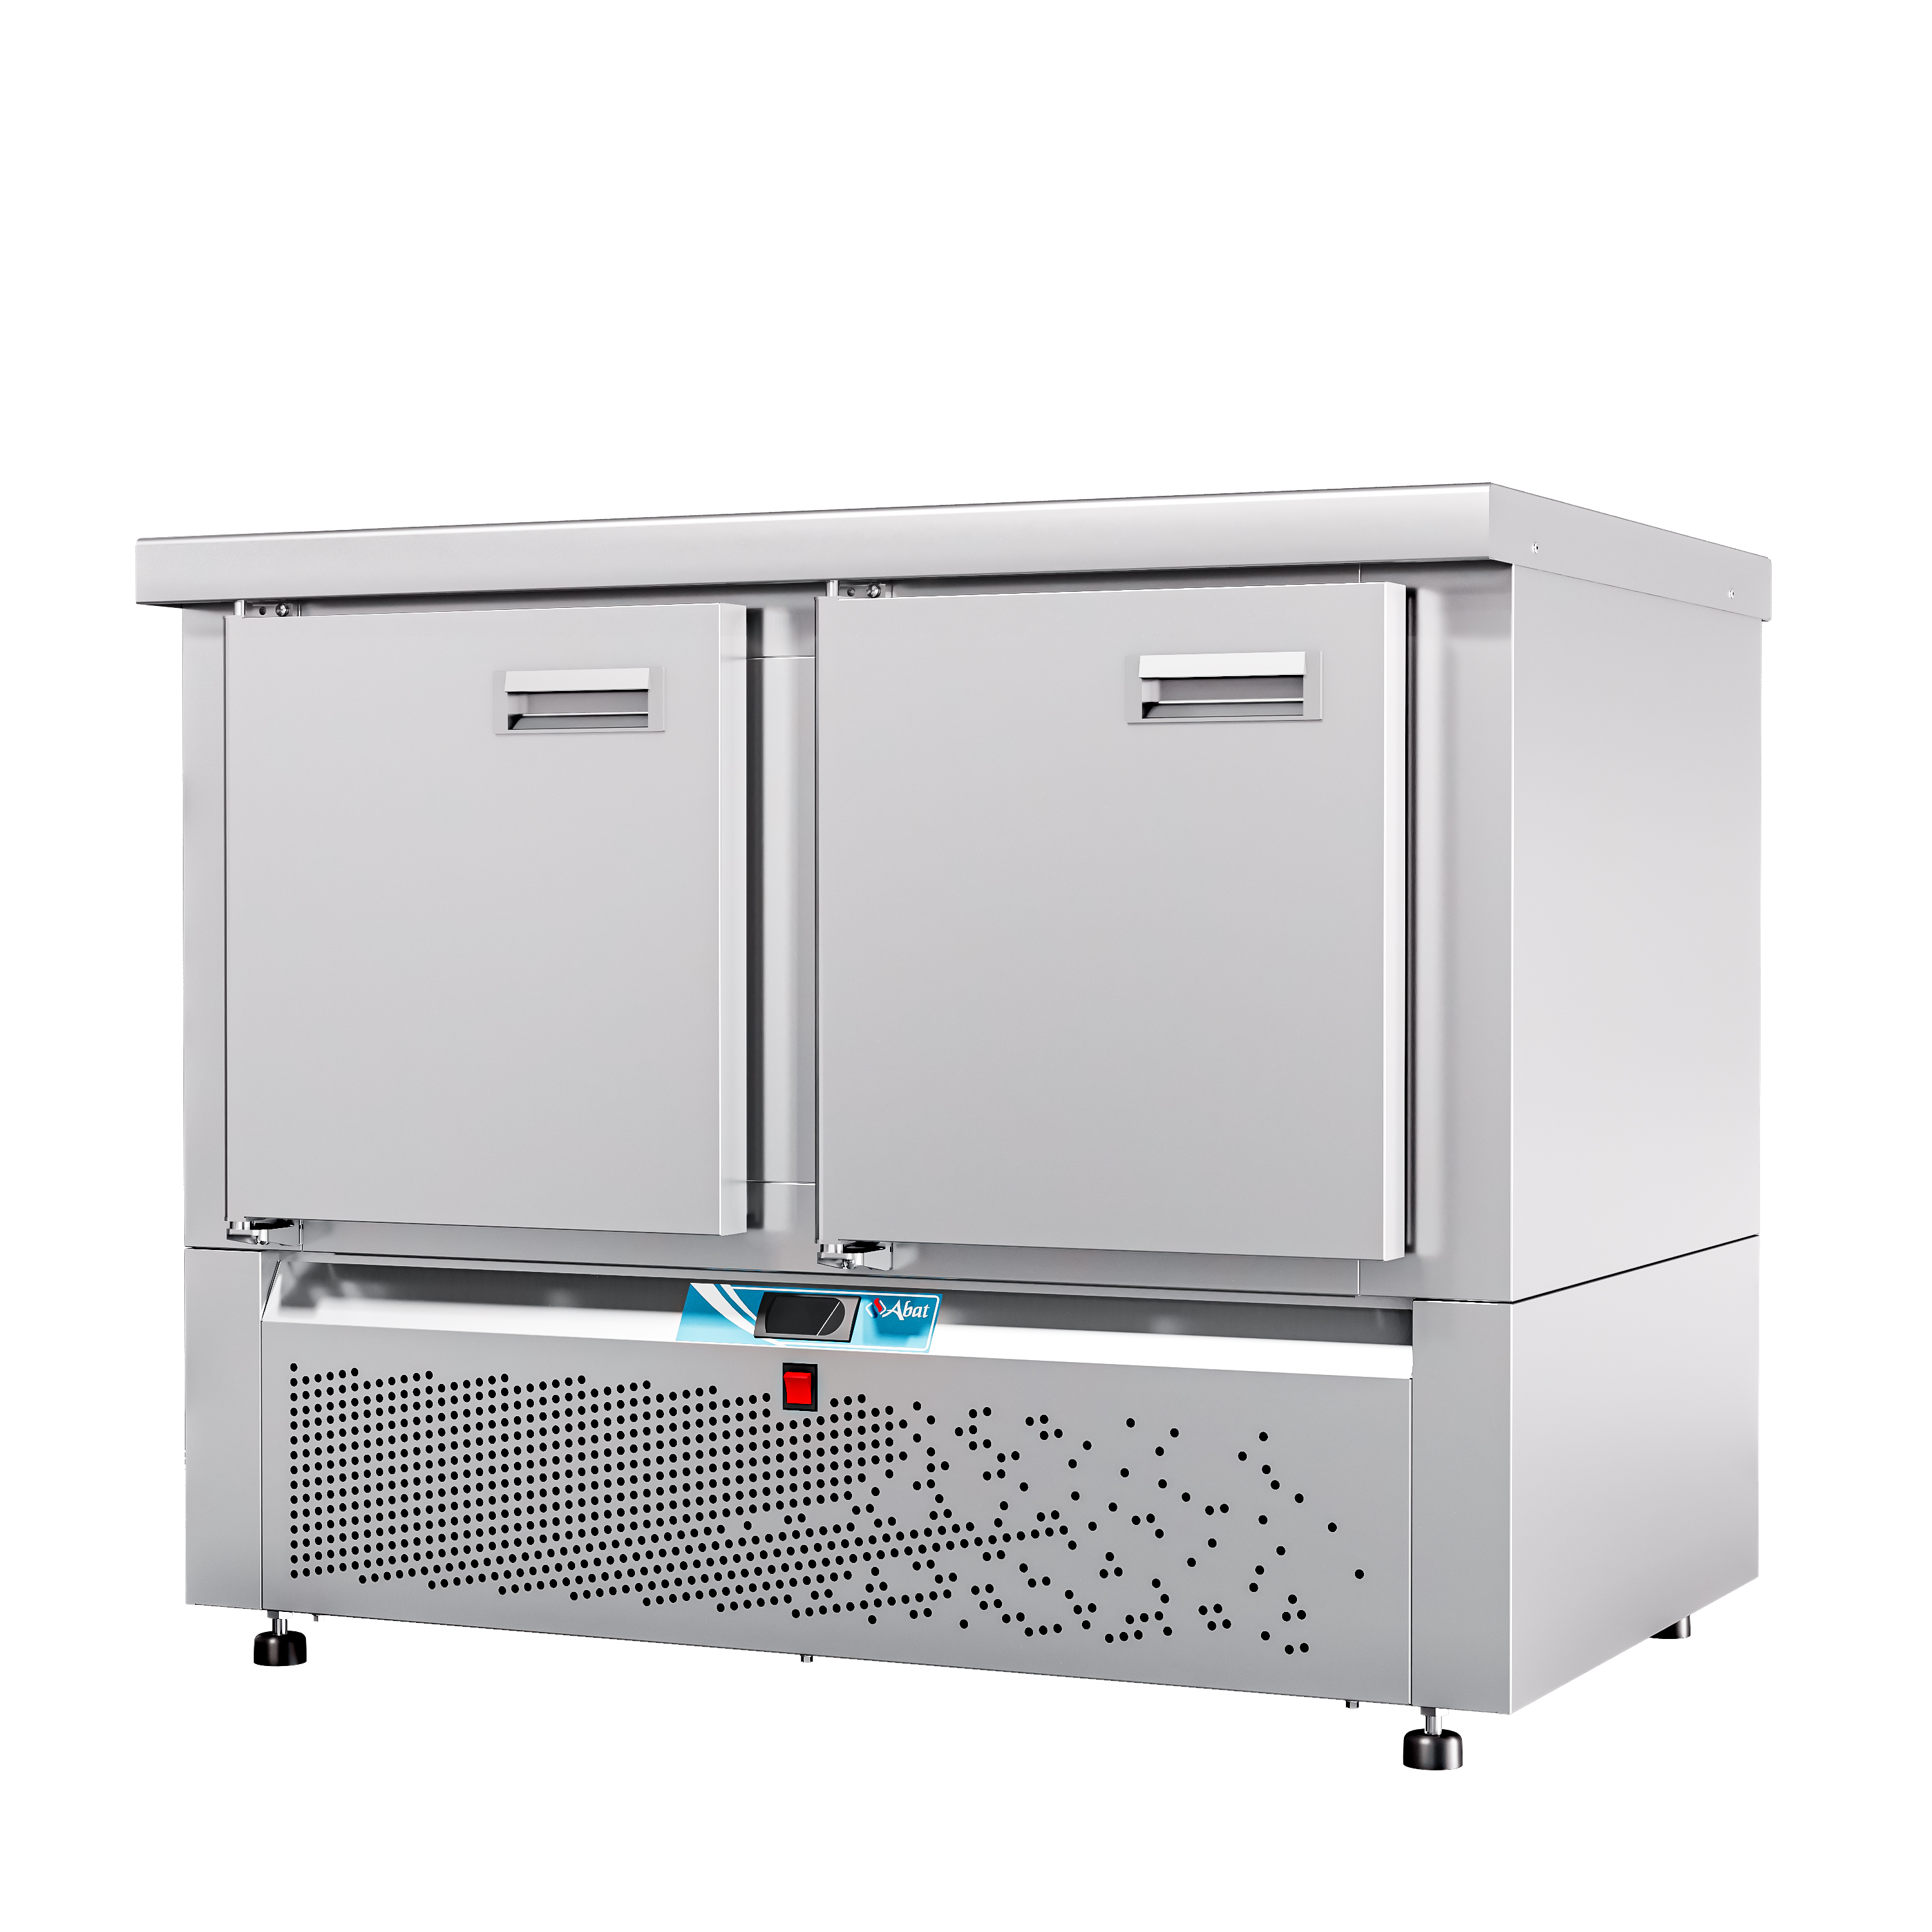 Стол холодильный среднетемпературный СХС-70Н-01 (дверь, дверь) без борта